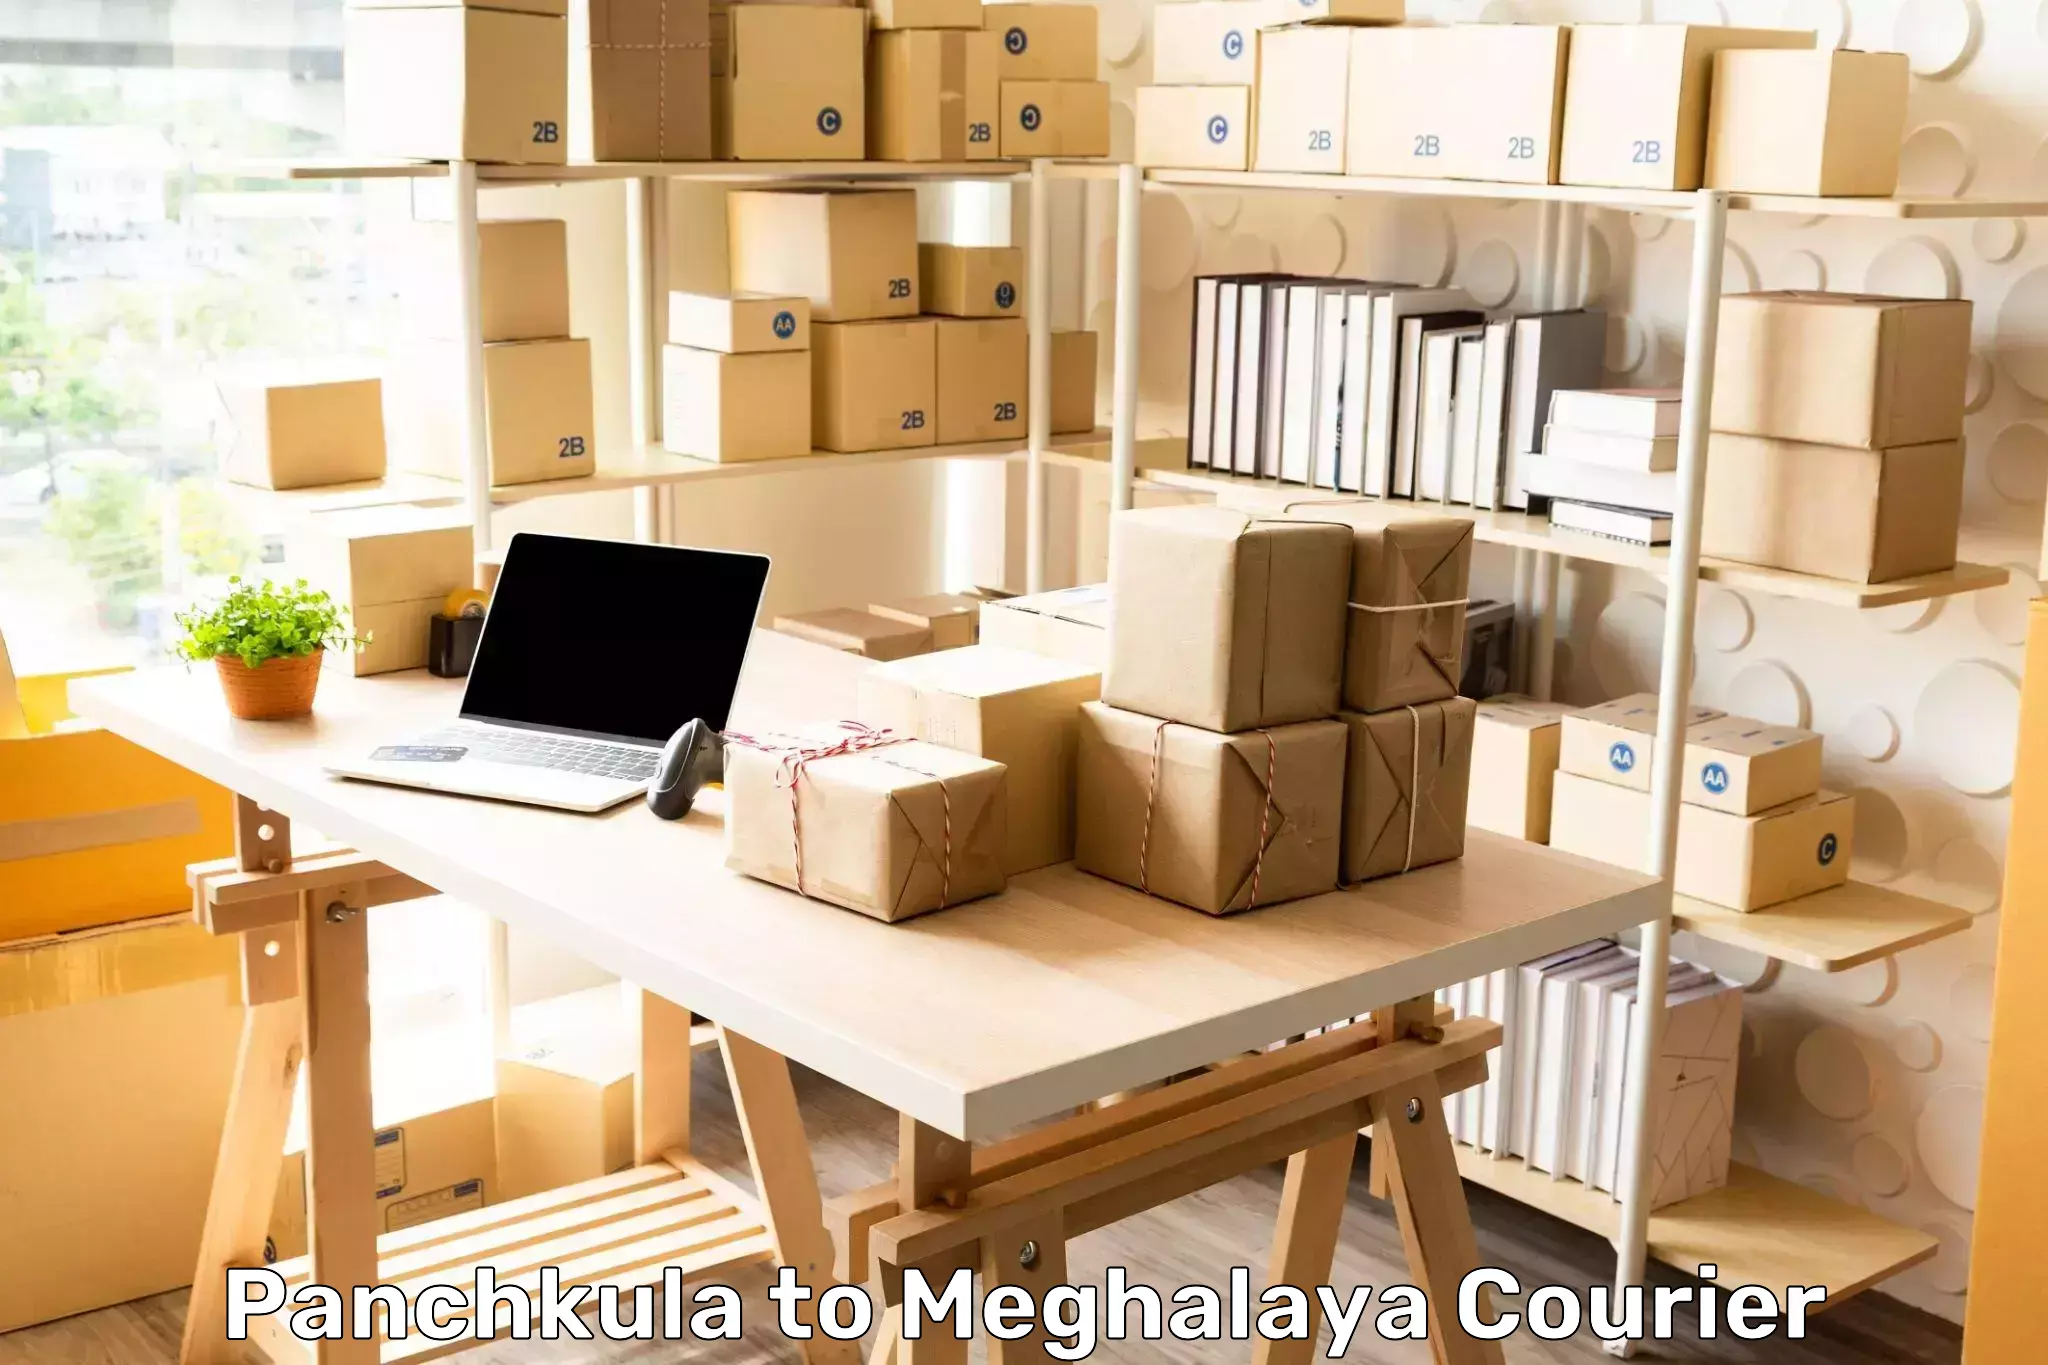 Multi-service courier options Panchkula to Tikrikilla